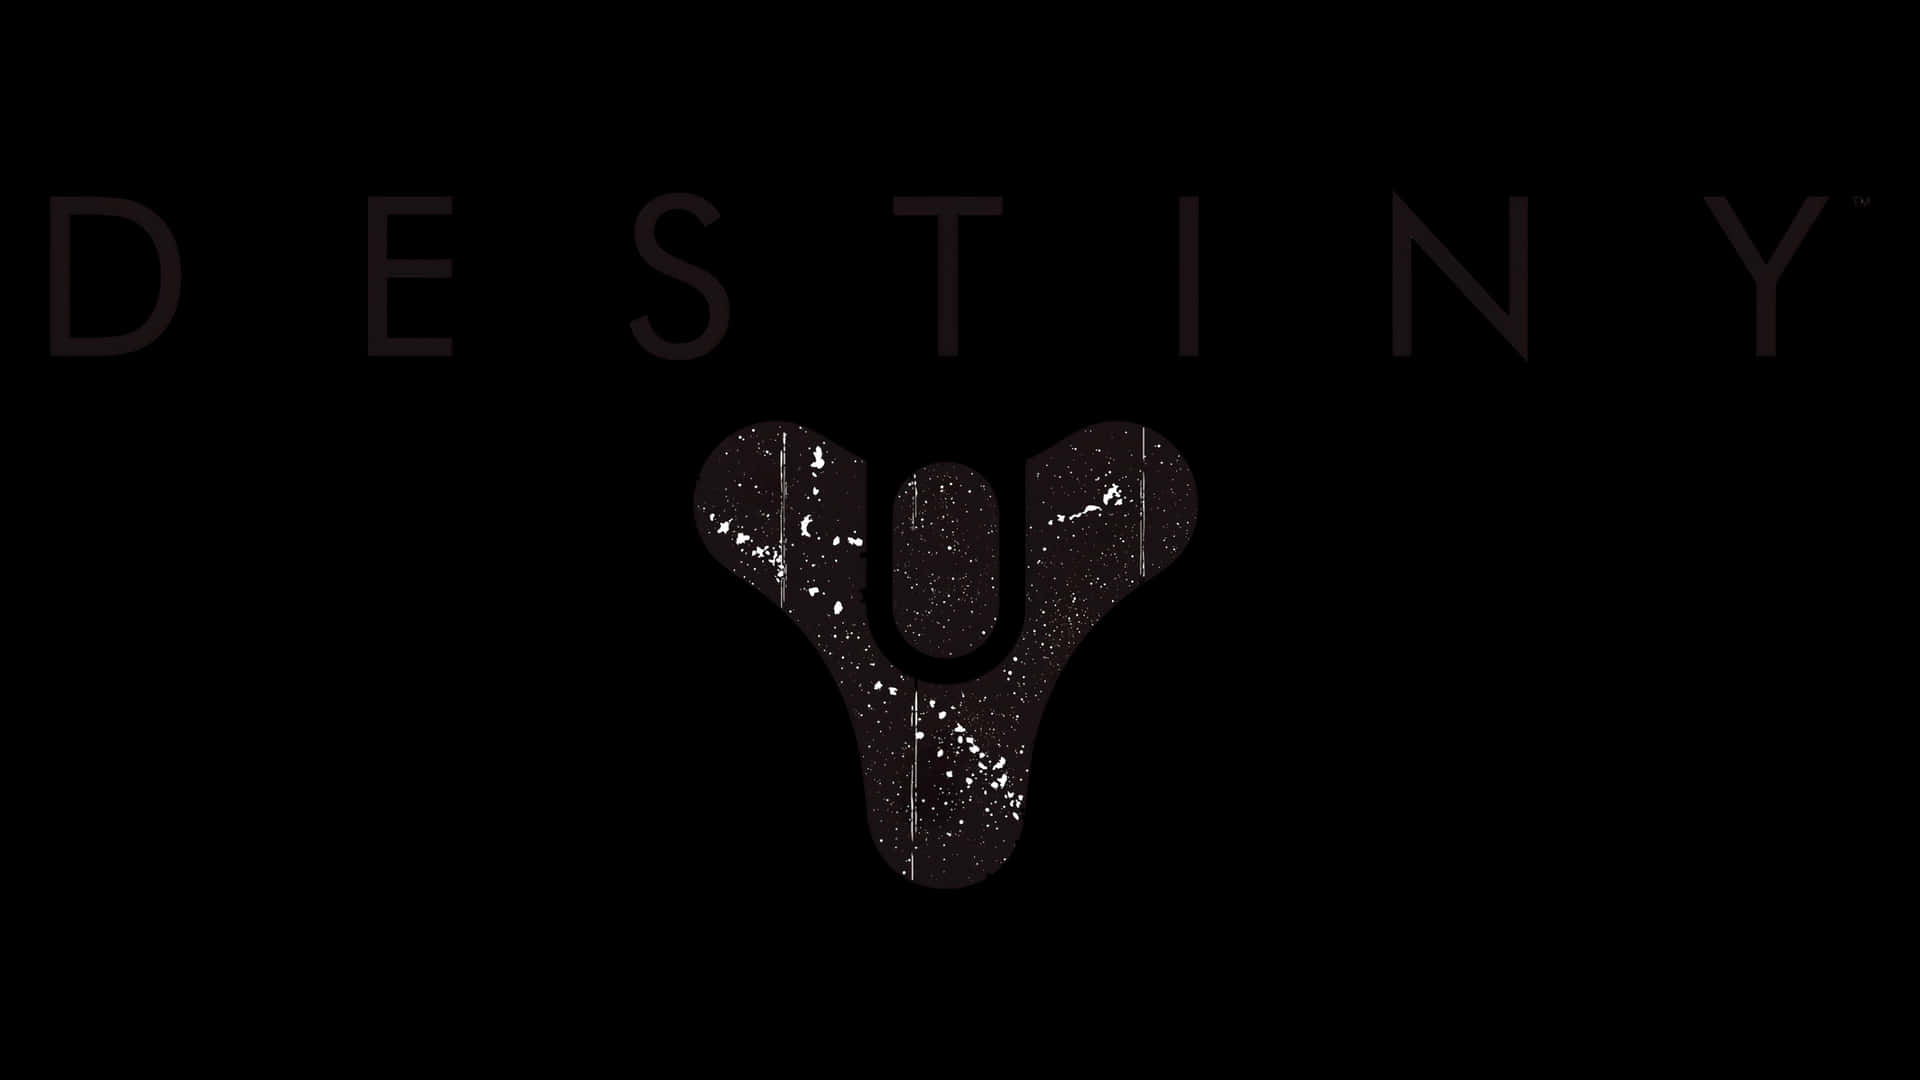 Denikoniska Destiny-logotypen Wallpaper